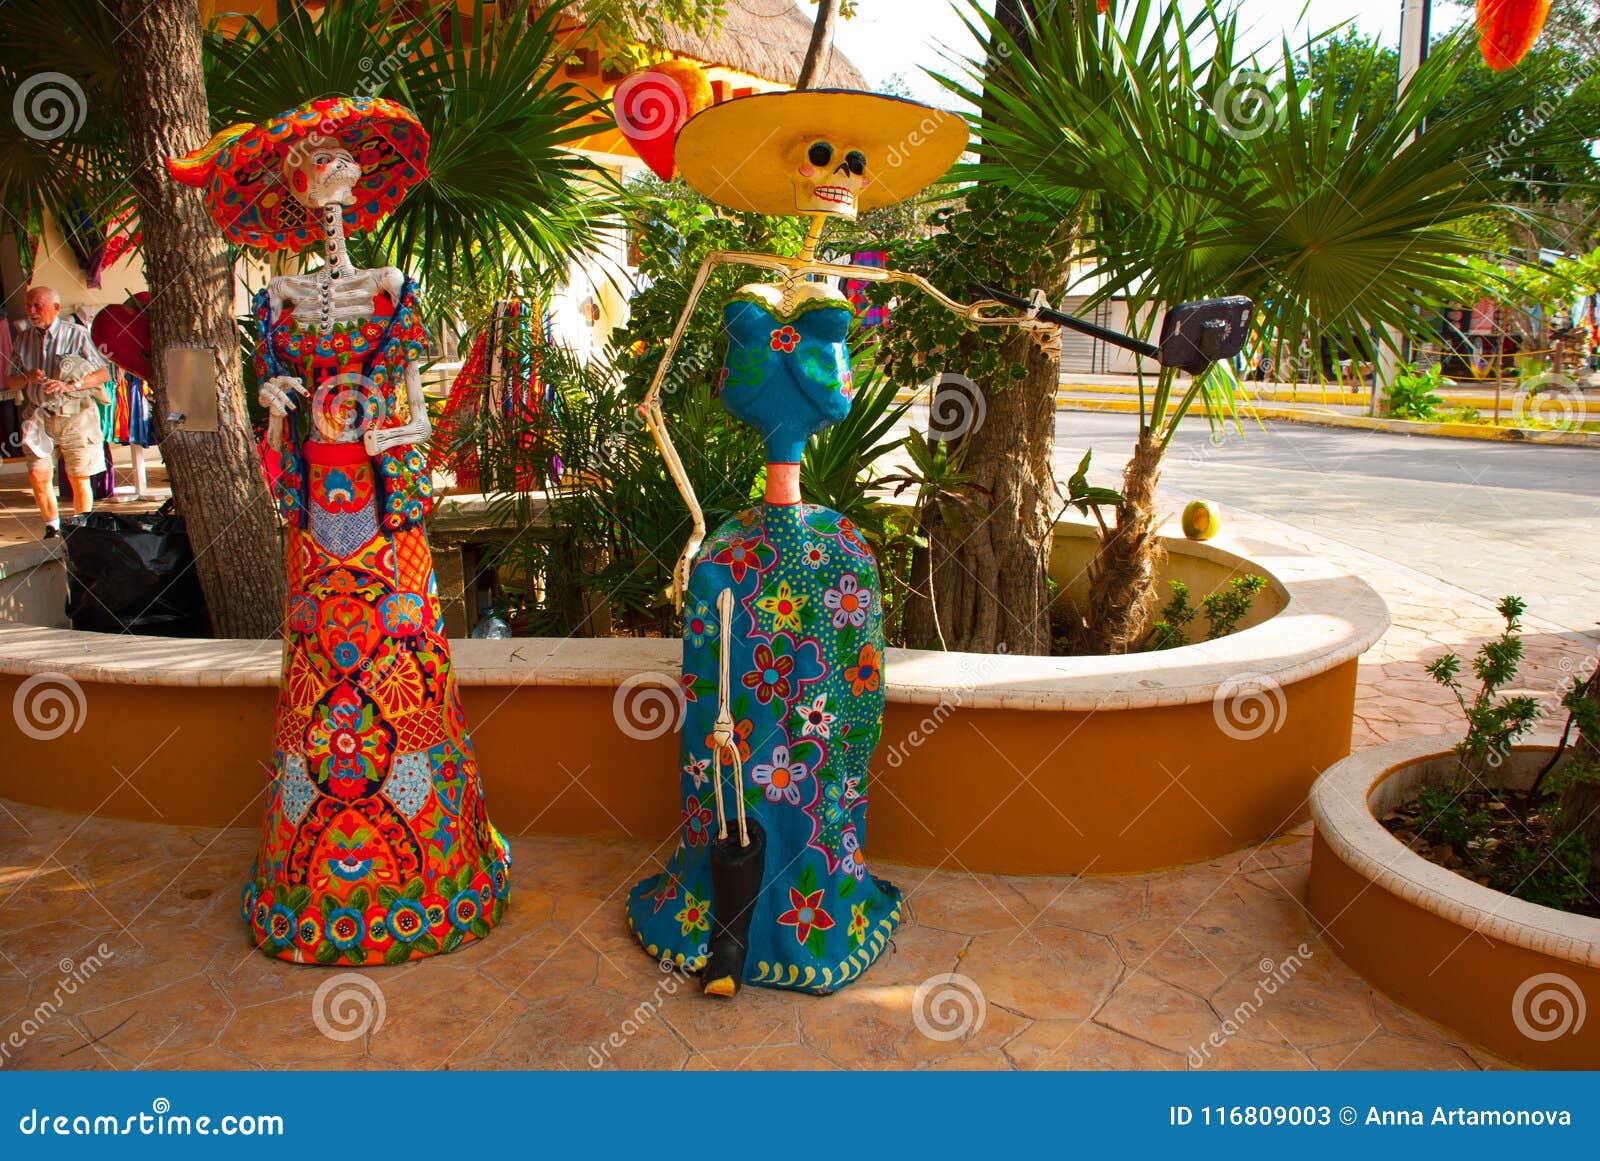 Tulum Quintana Roo Mexiko Statuen Der Gottin Des Todes Catrina Am Eingang Zum Souvenirladen Die Hauptfigur Von T Redaktionelles Stockfoto Bild Von Quintana Hauptfigur